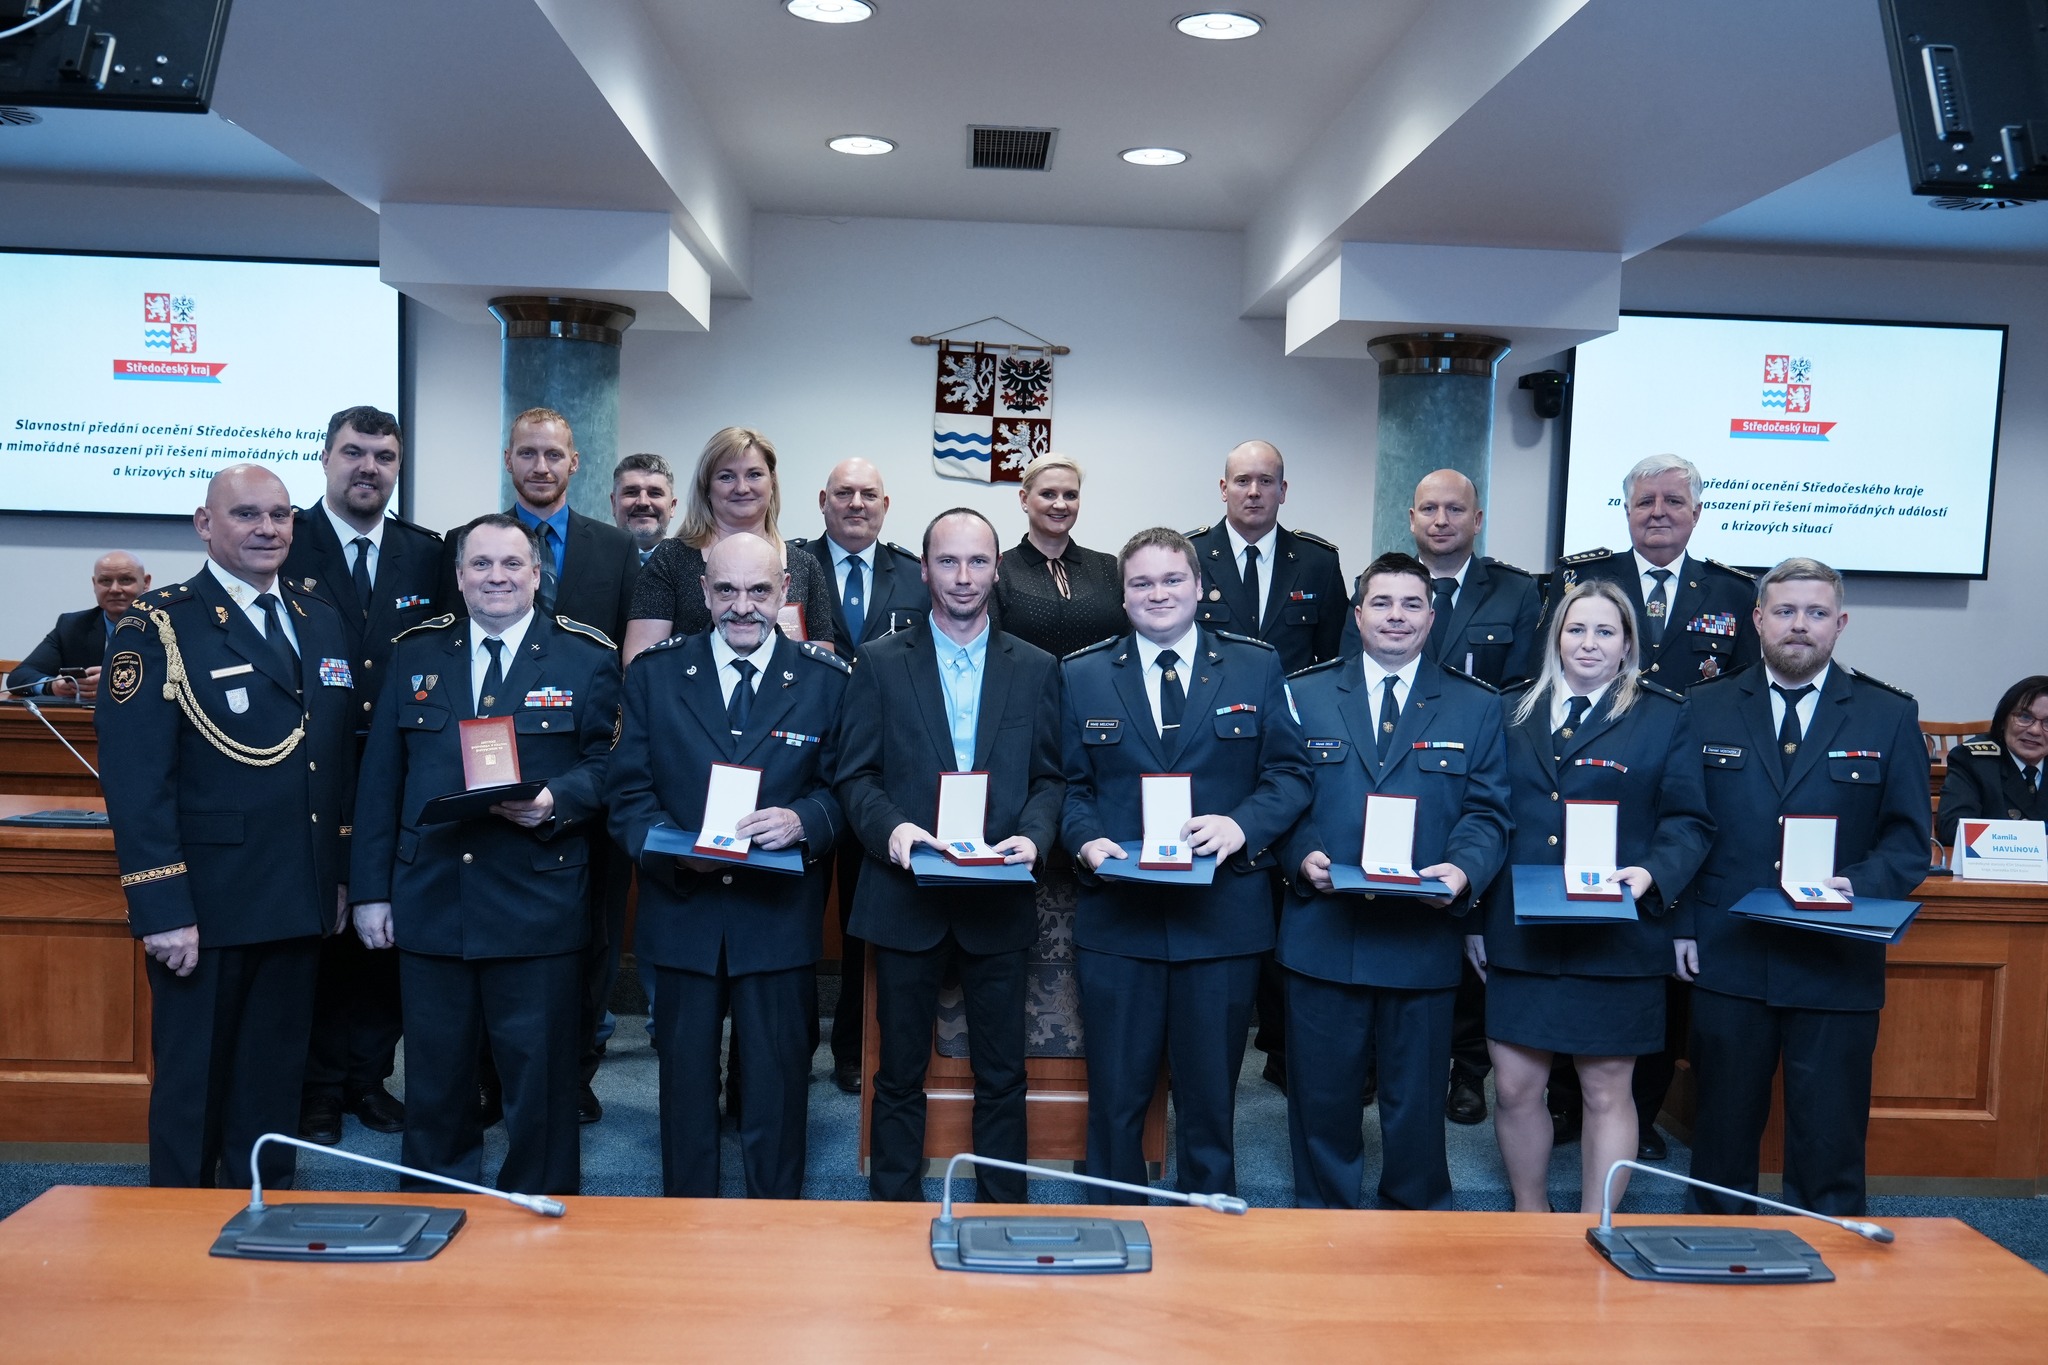 Středočeského kraj ocenil práci dobrovolných hasičů a armády